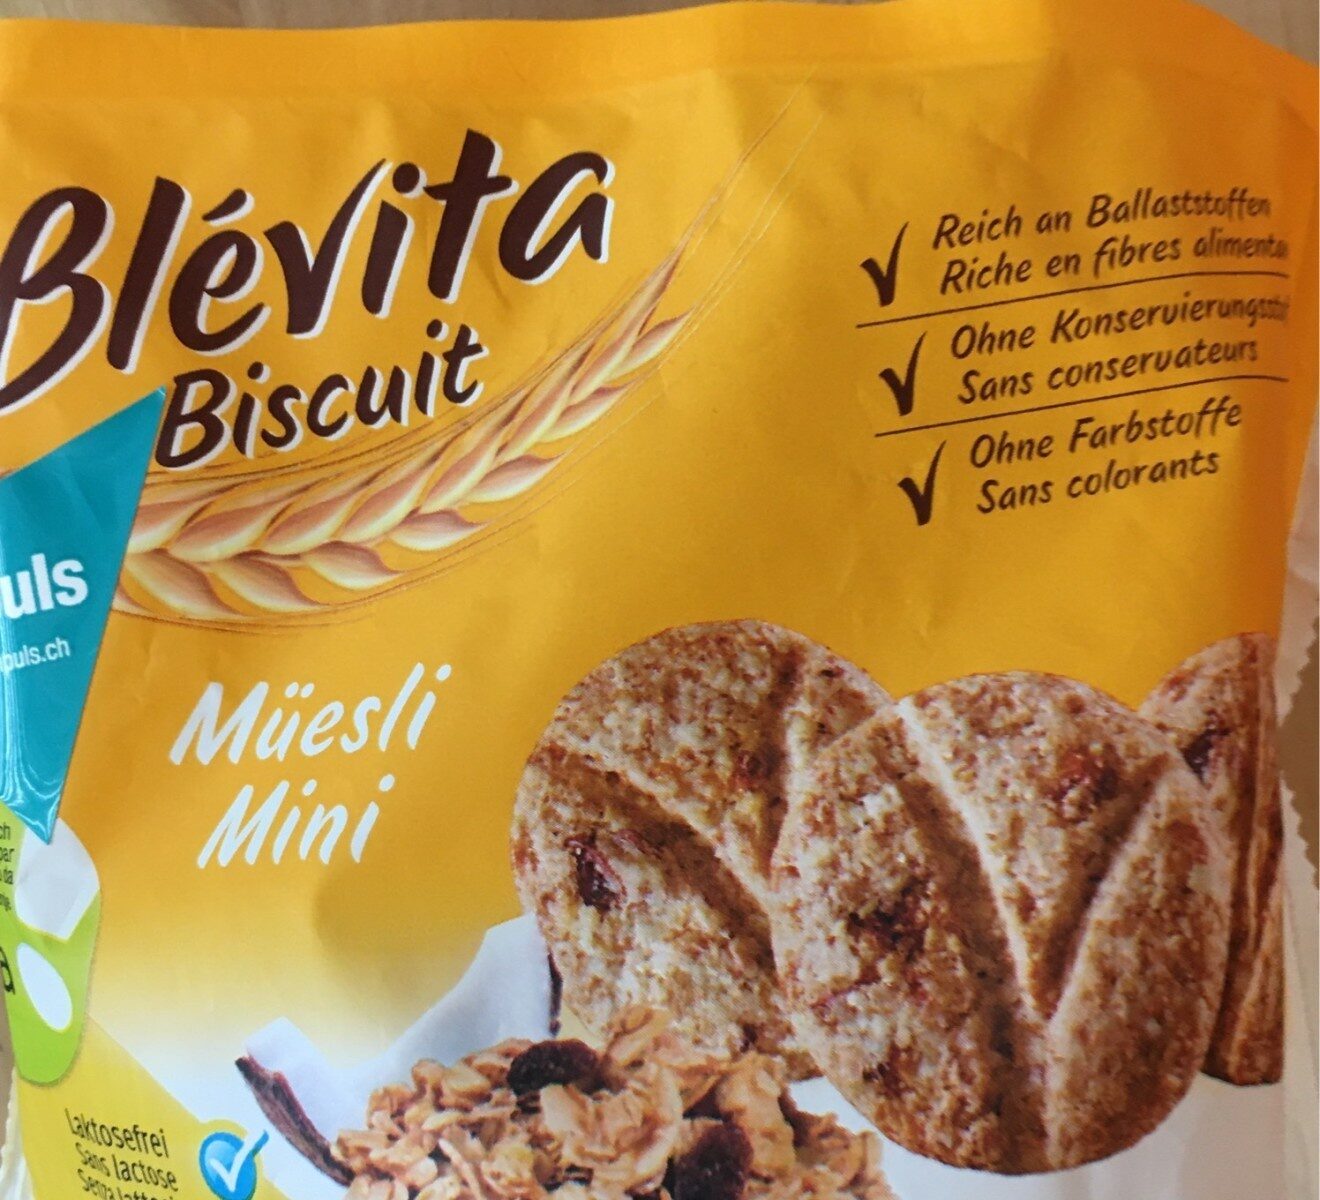 Blévita Biscuit Müsli Mini 9 STK - Product - fr